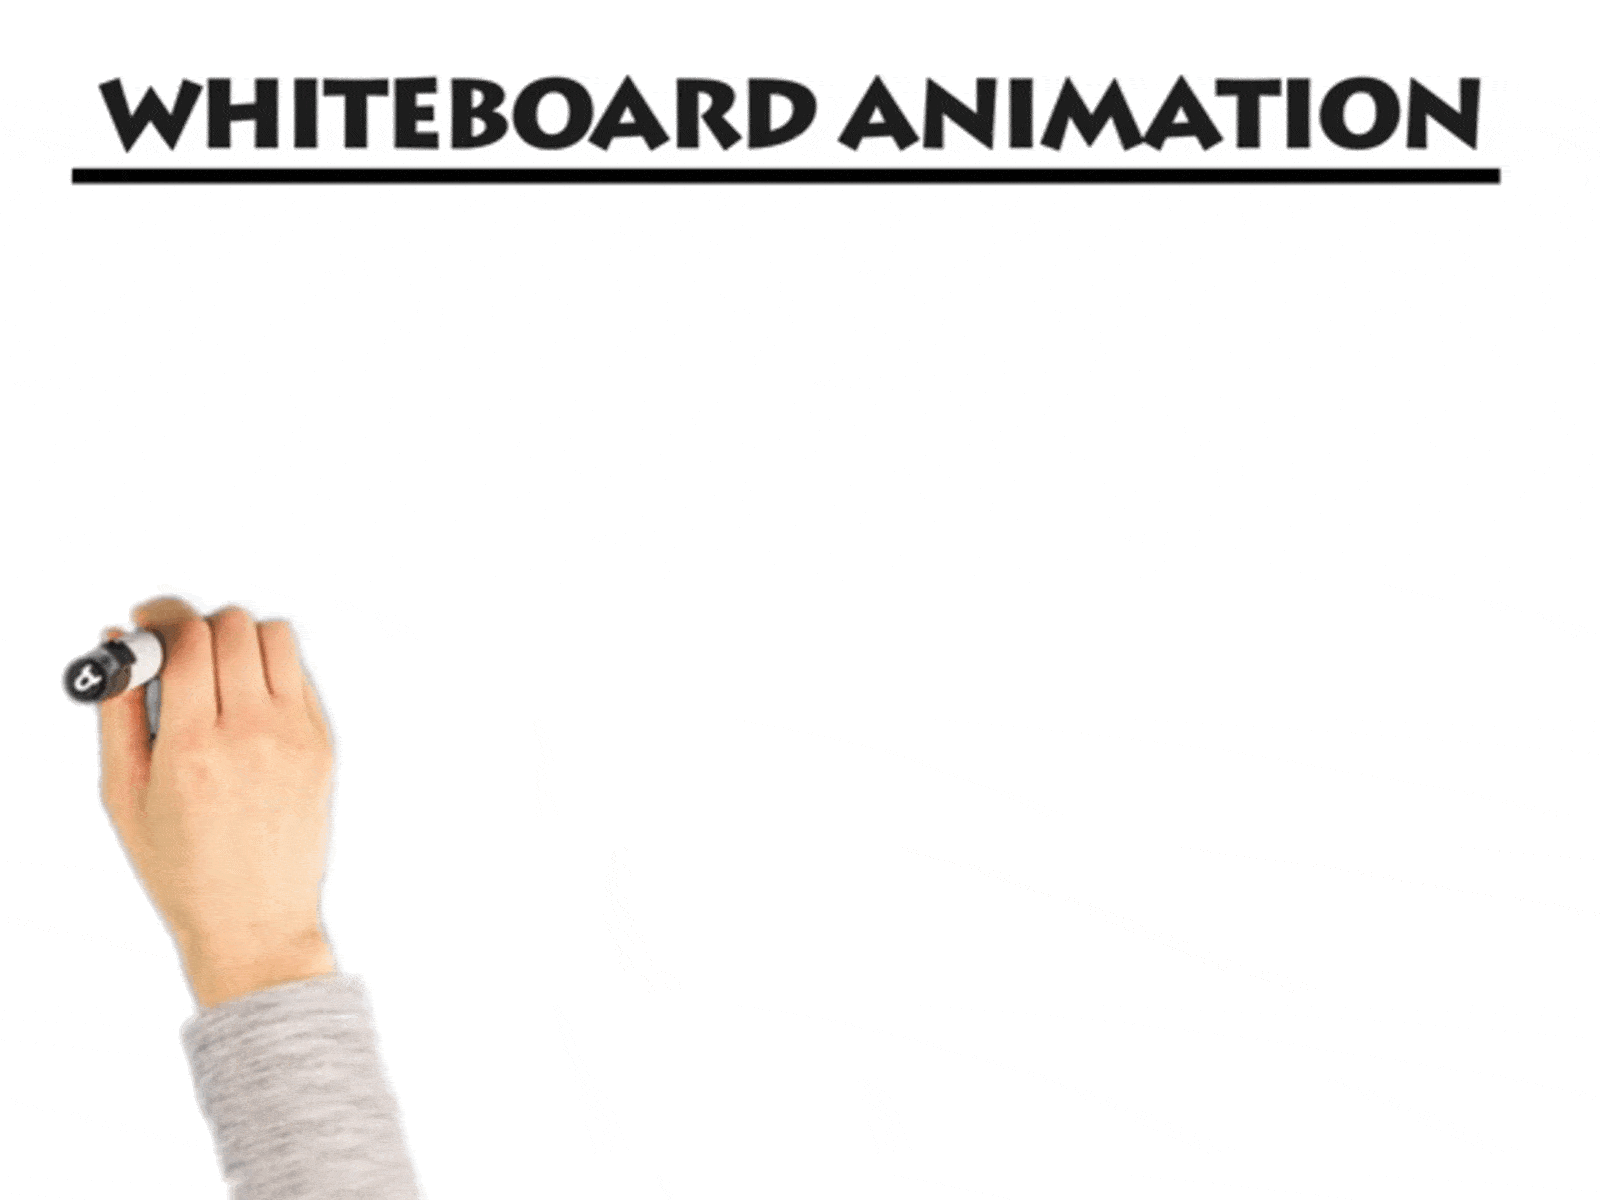 Whiteboard Animation art branding design flat illustration vector web